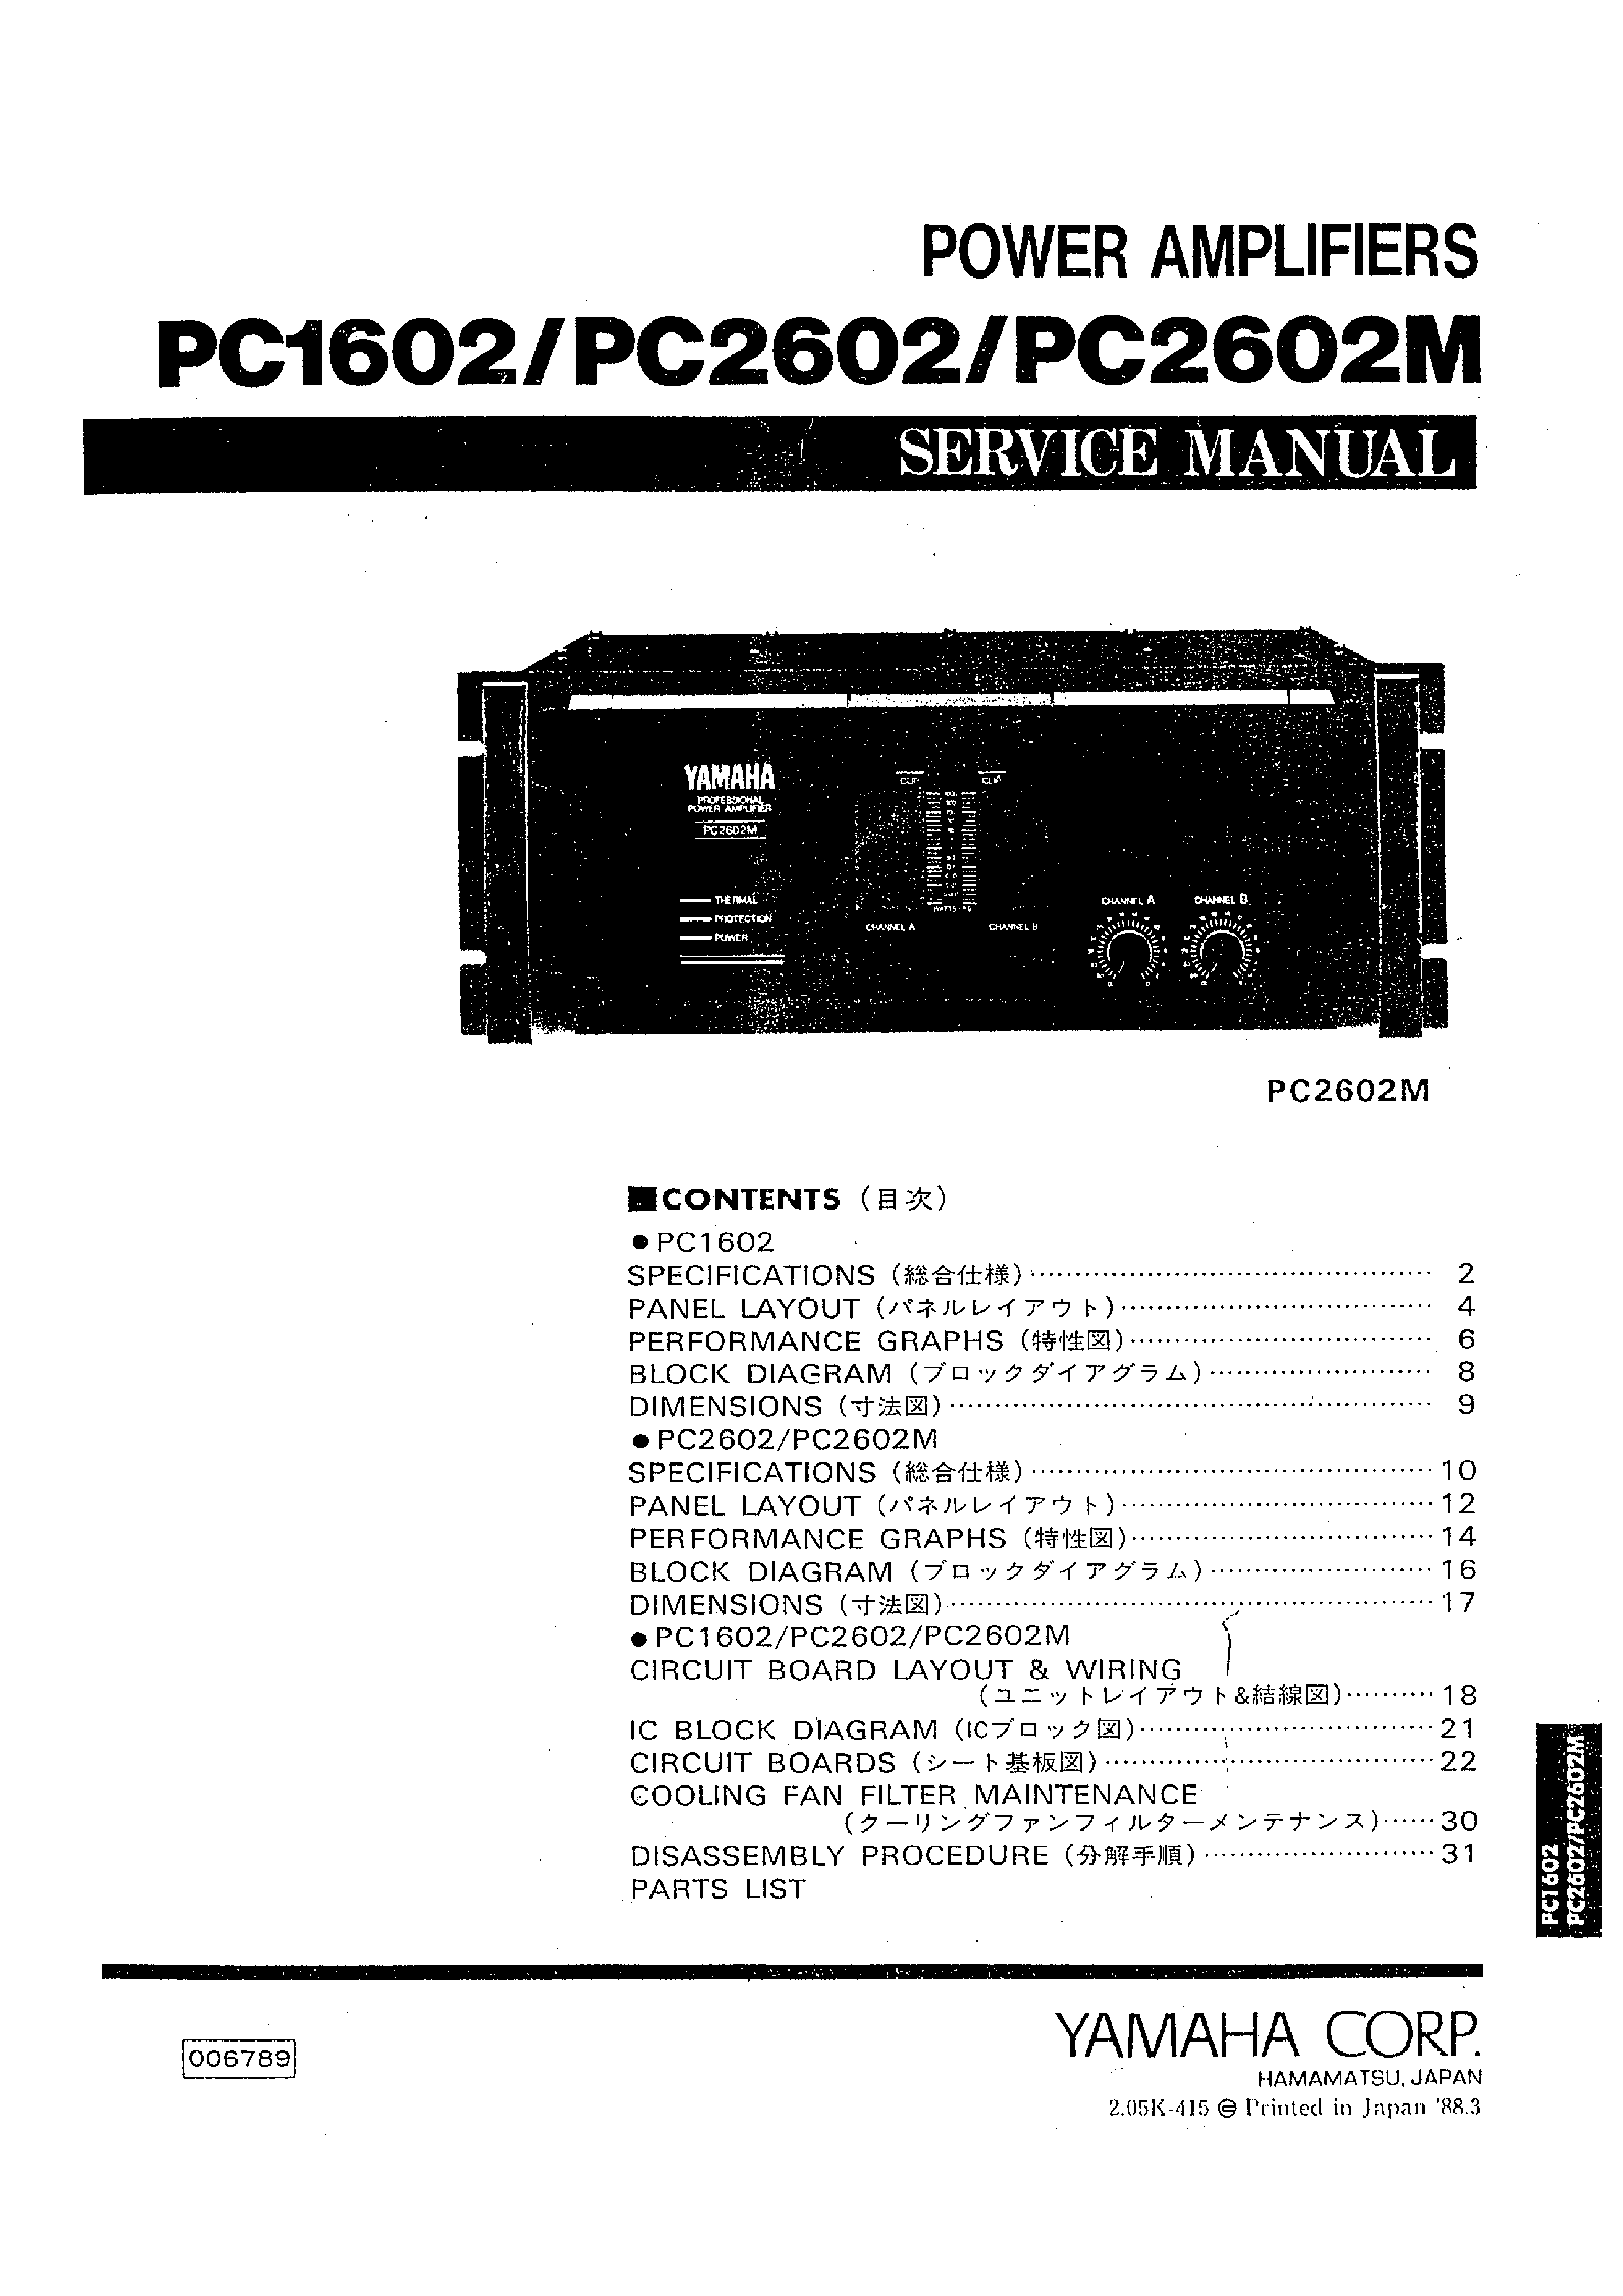 YAMAHA PC1602 PC2602 PC2602M SM service manual (1st page)